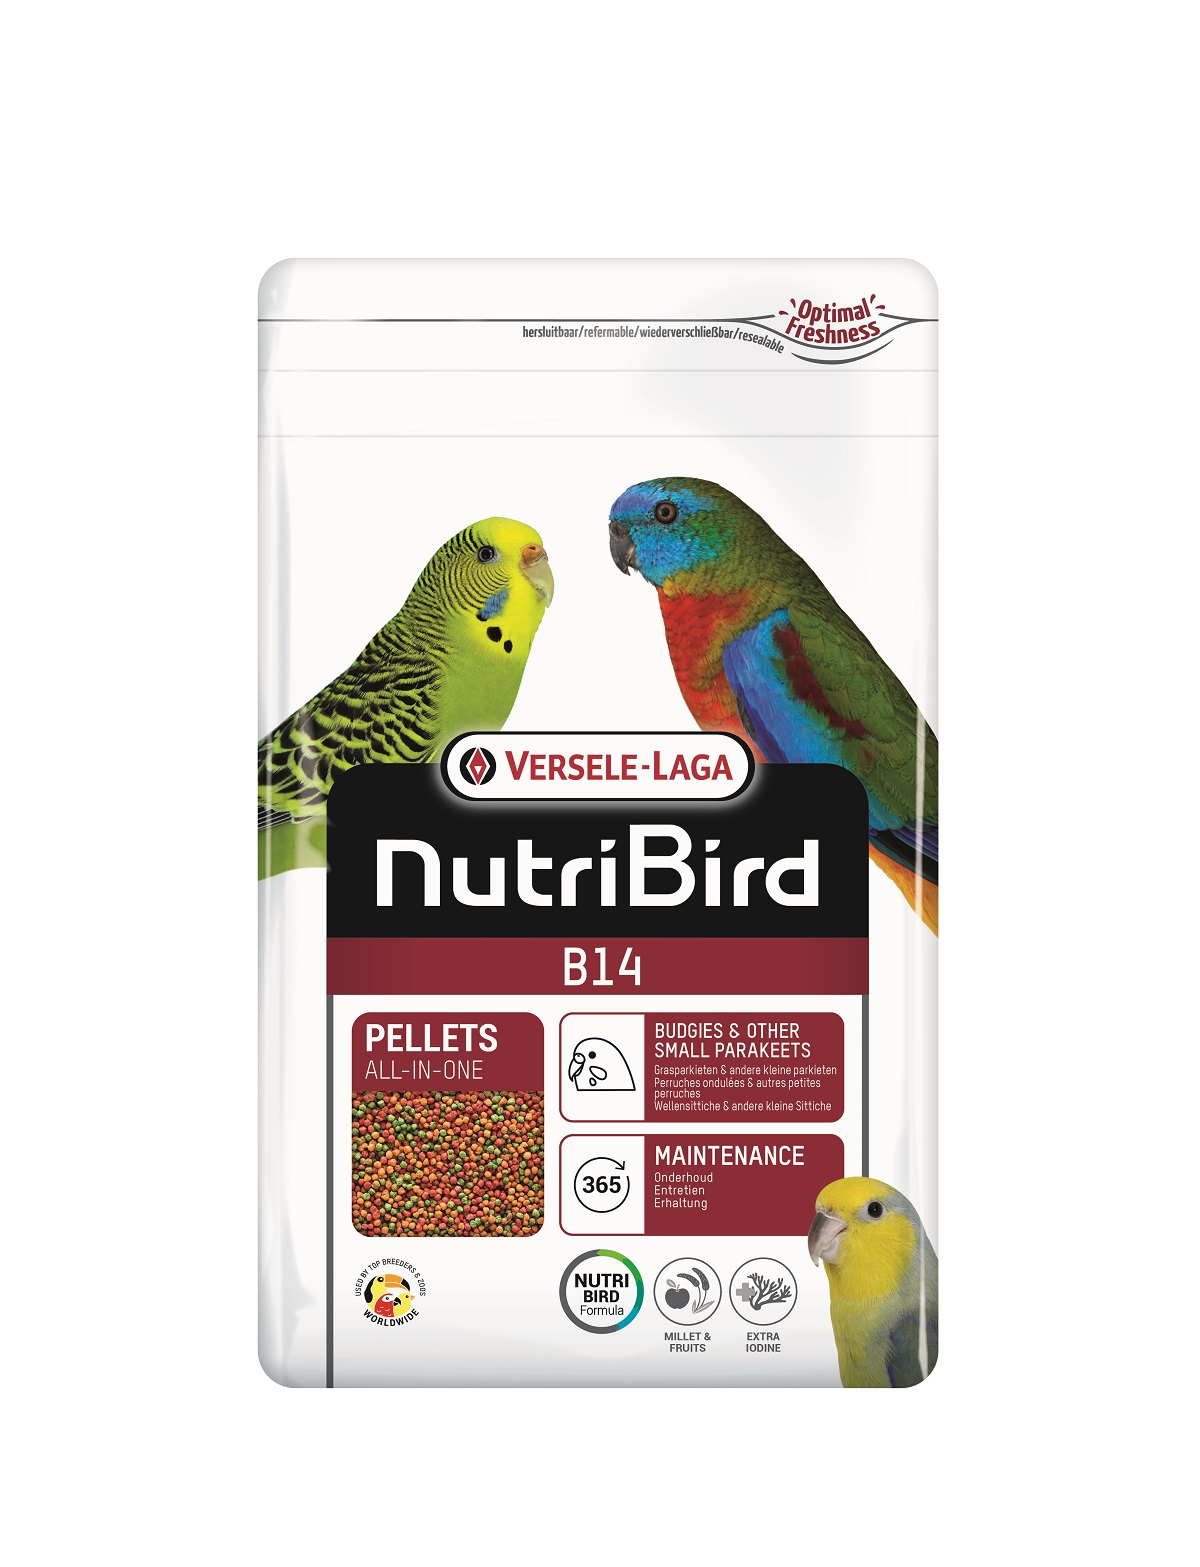 NutriBird B14 entretien pour perruches